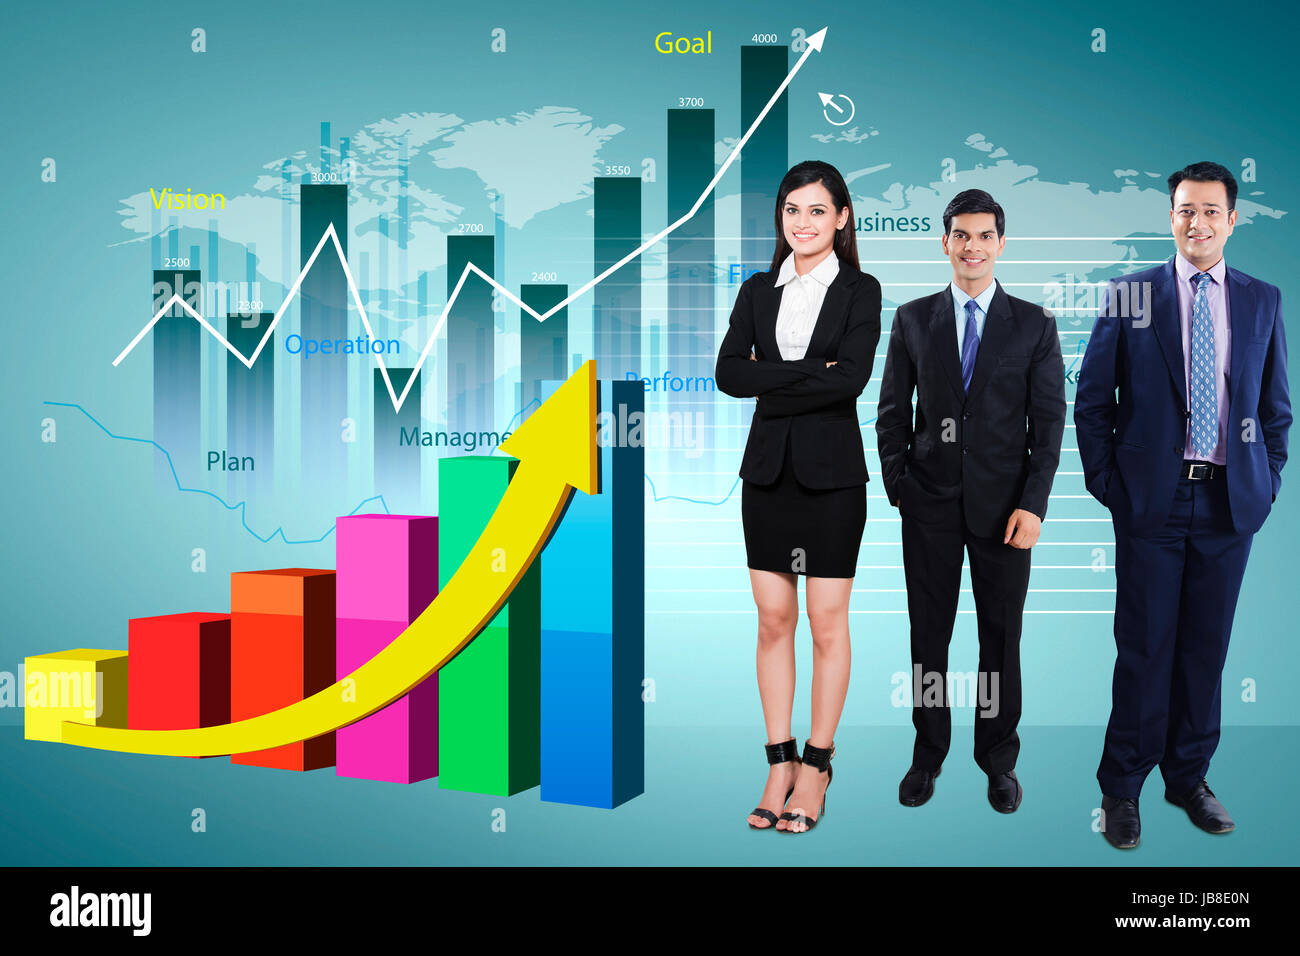 3 Les gens d'affaires collègue illustration graphique du marché stock permanent photo numérique Banque D'Images